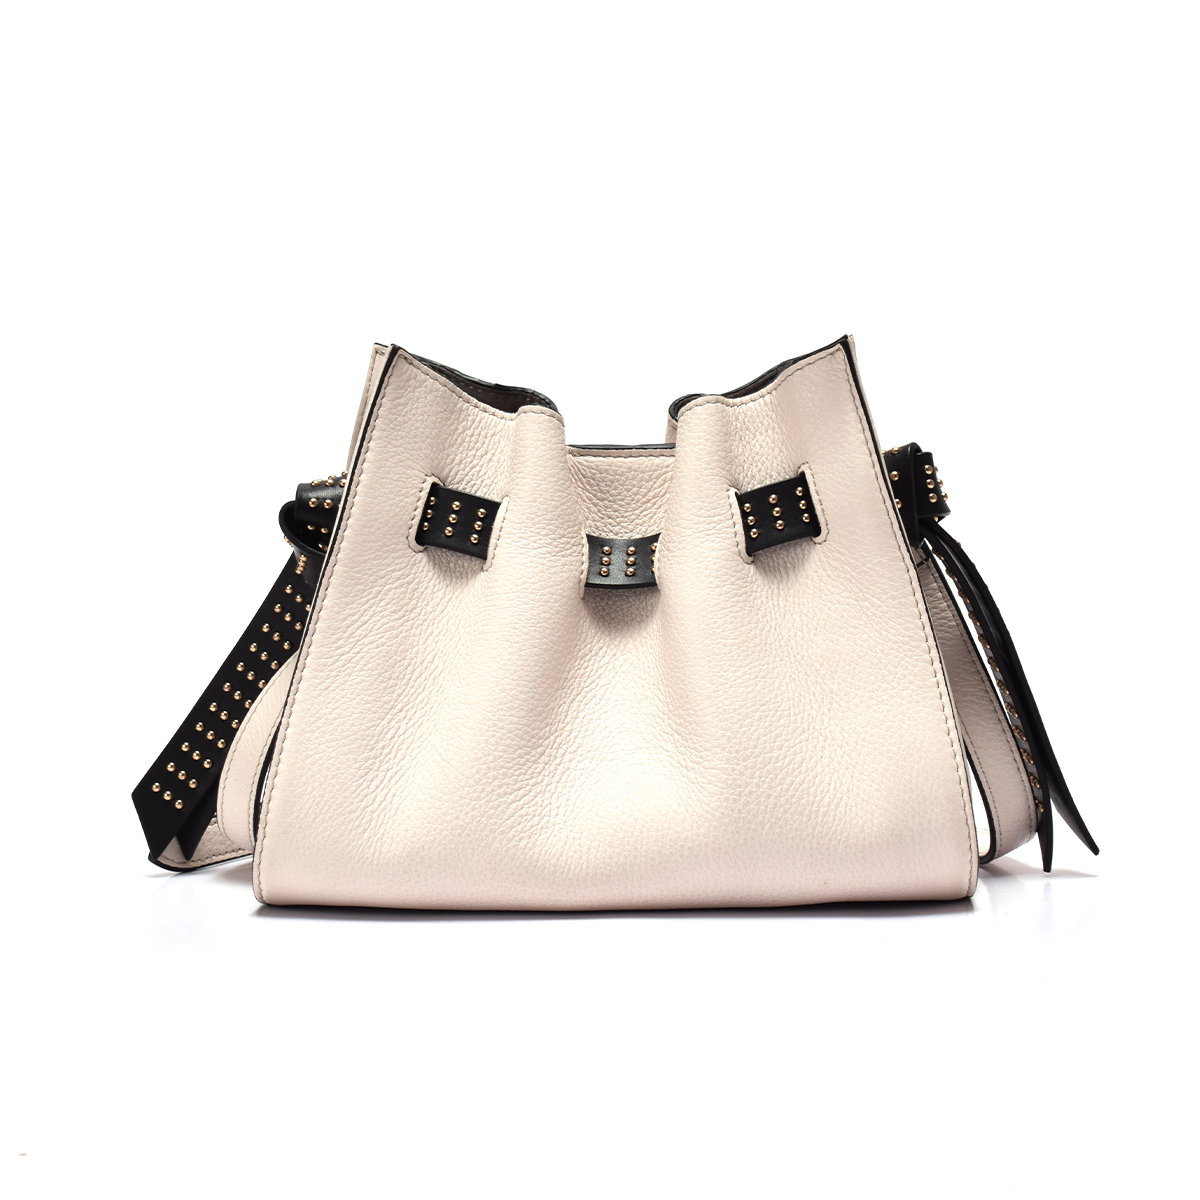 Sanlly classic black leather shoulder handbag manufacturers for girls-2